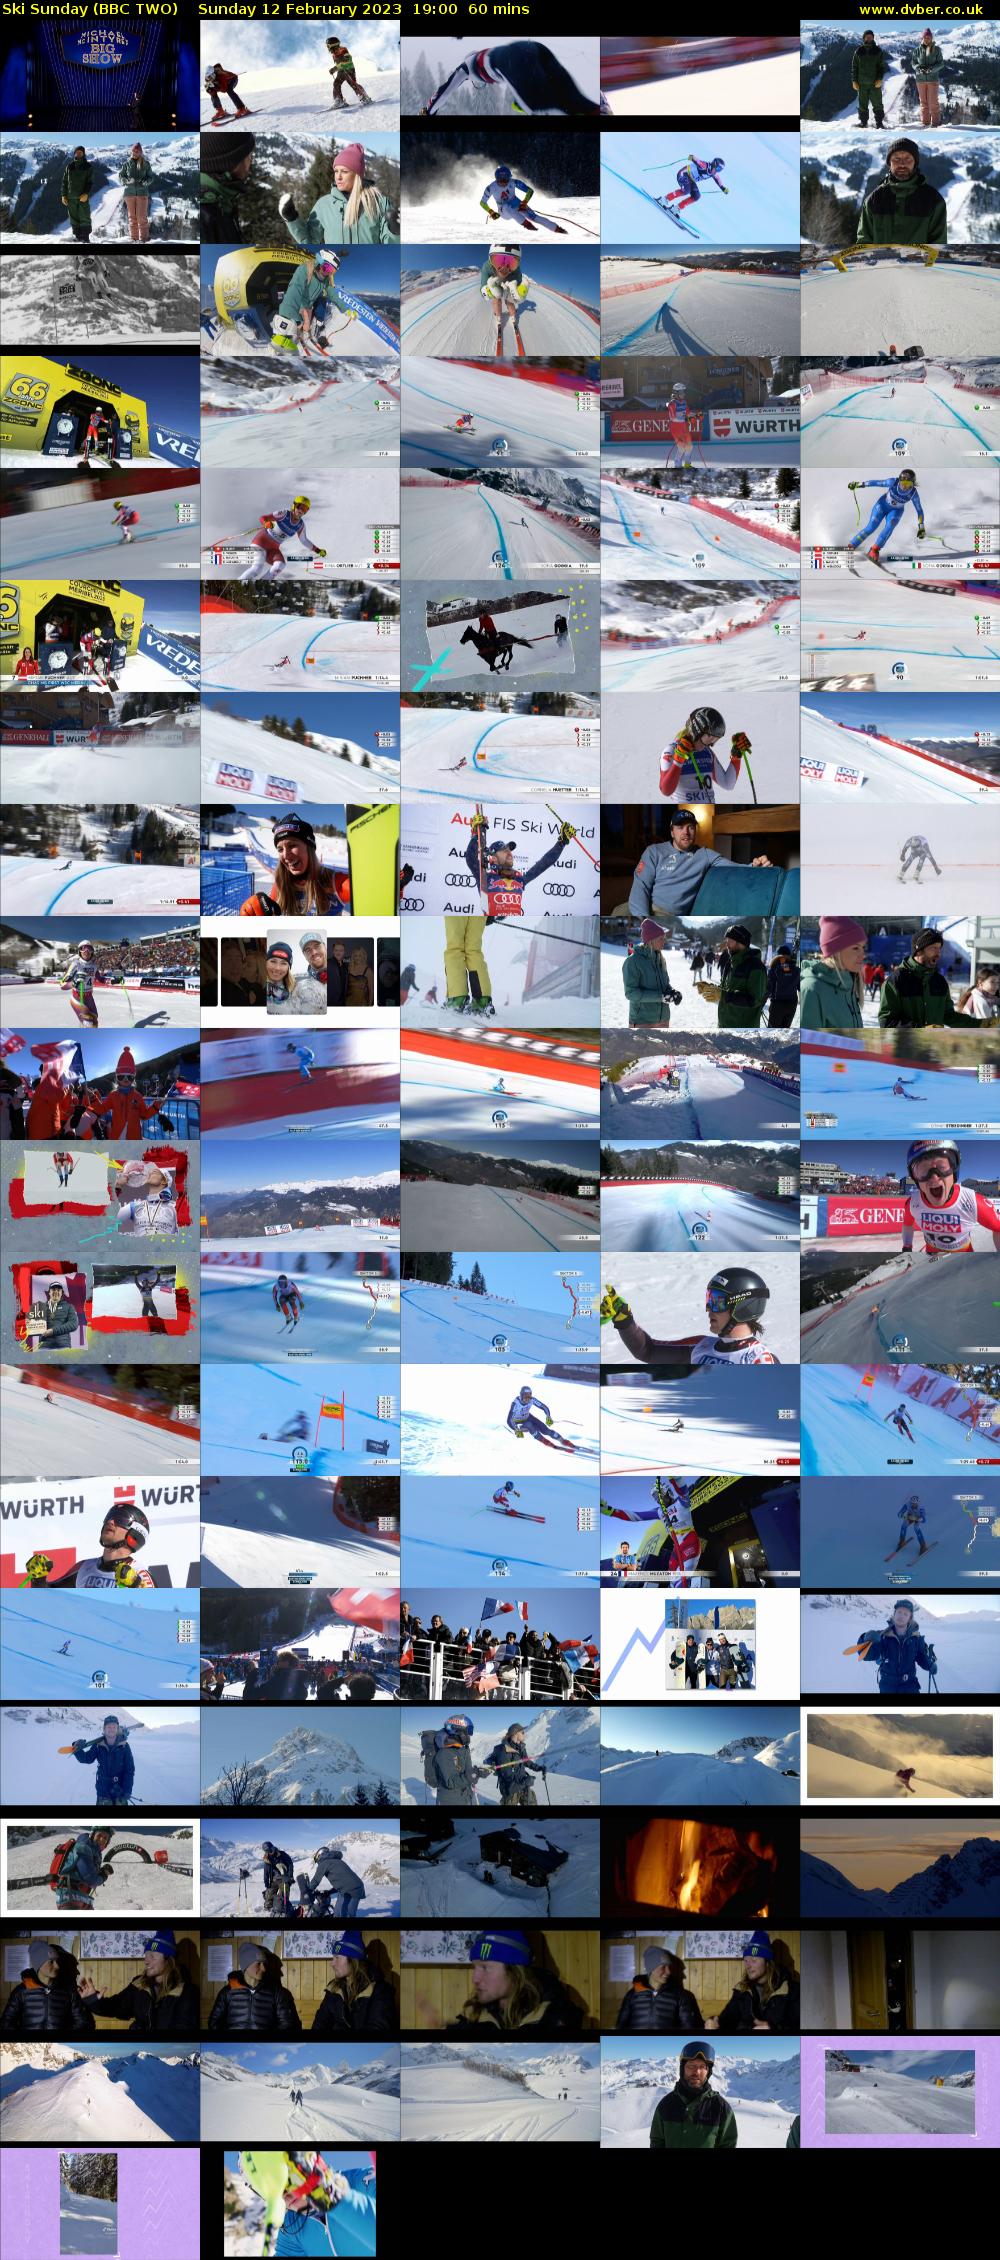 Ski Sunday (BBC TWO) Sunday 12 February 2023 19:00 - 20:00